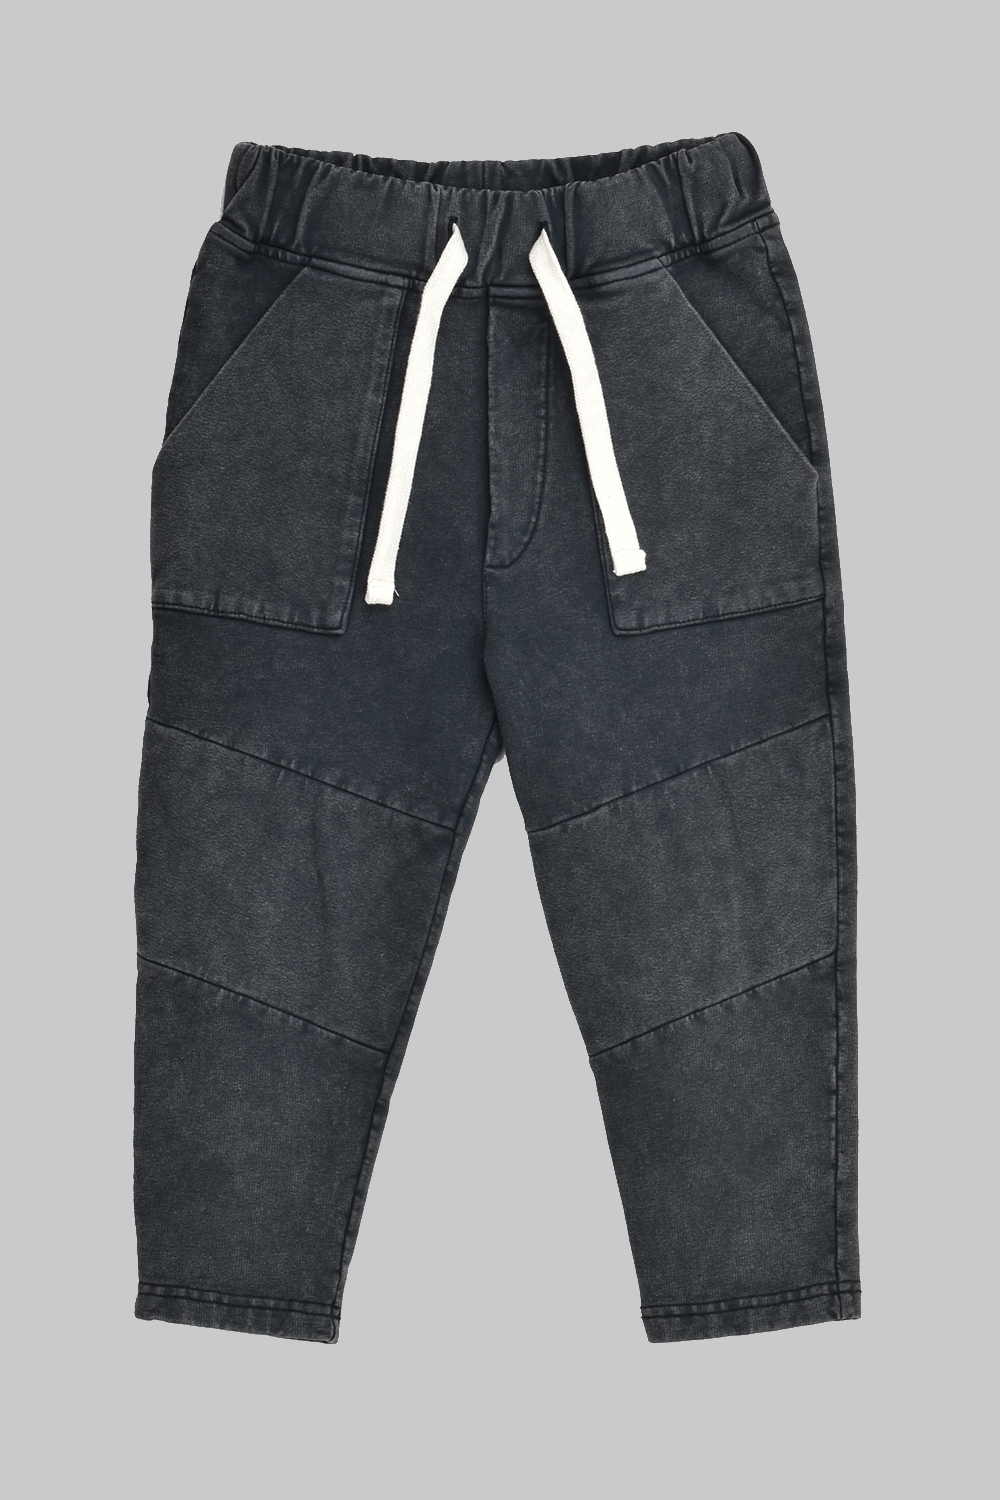 Vintage Black Pocket Pants